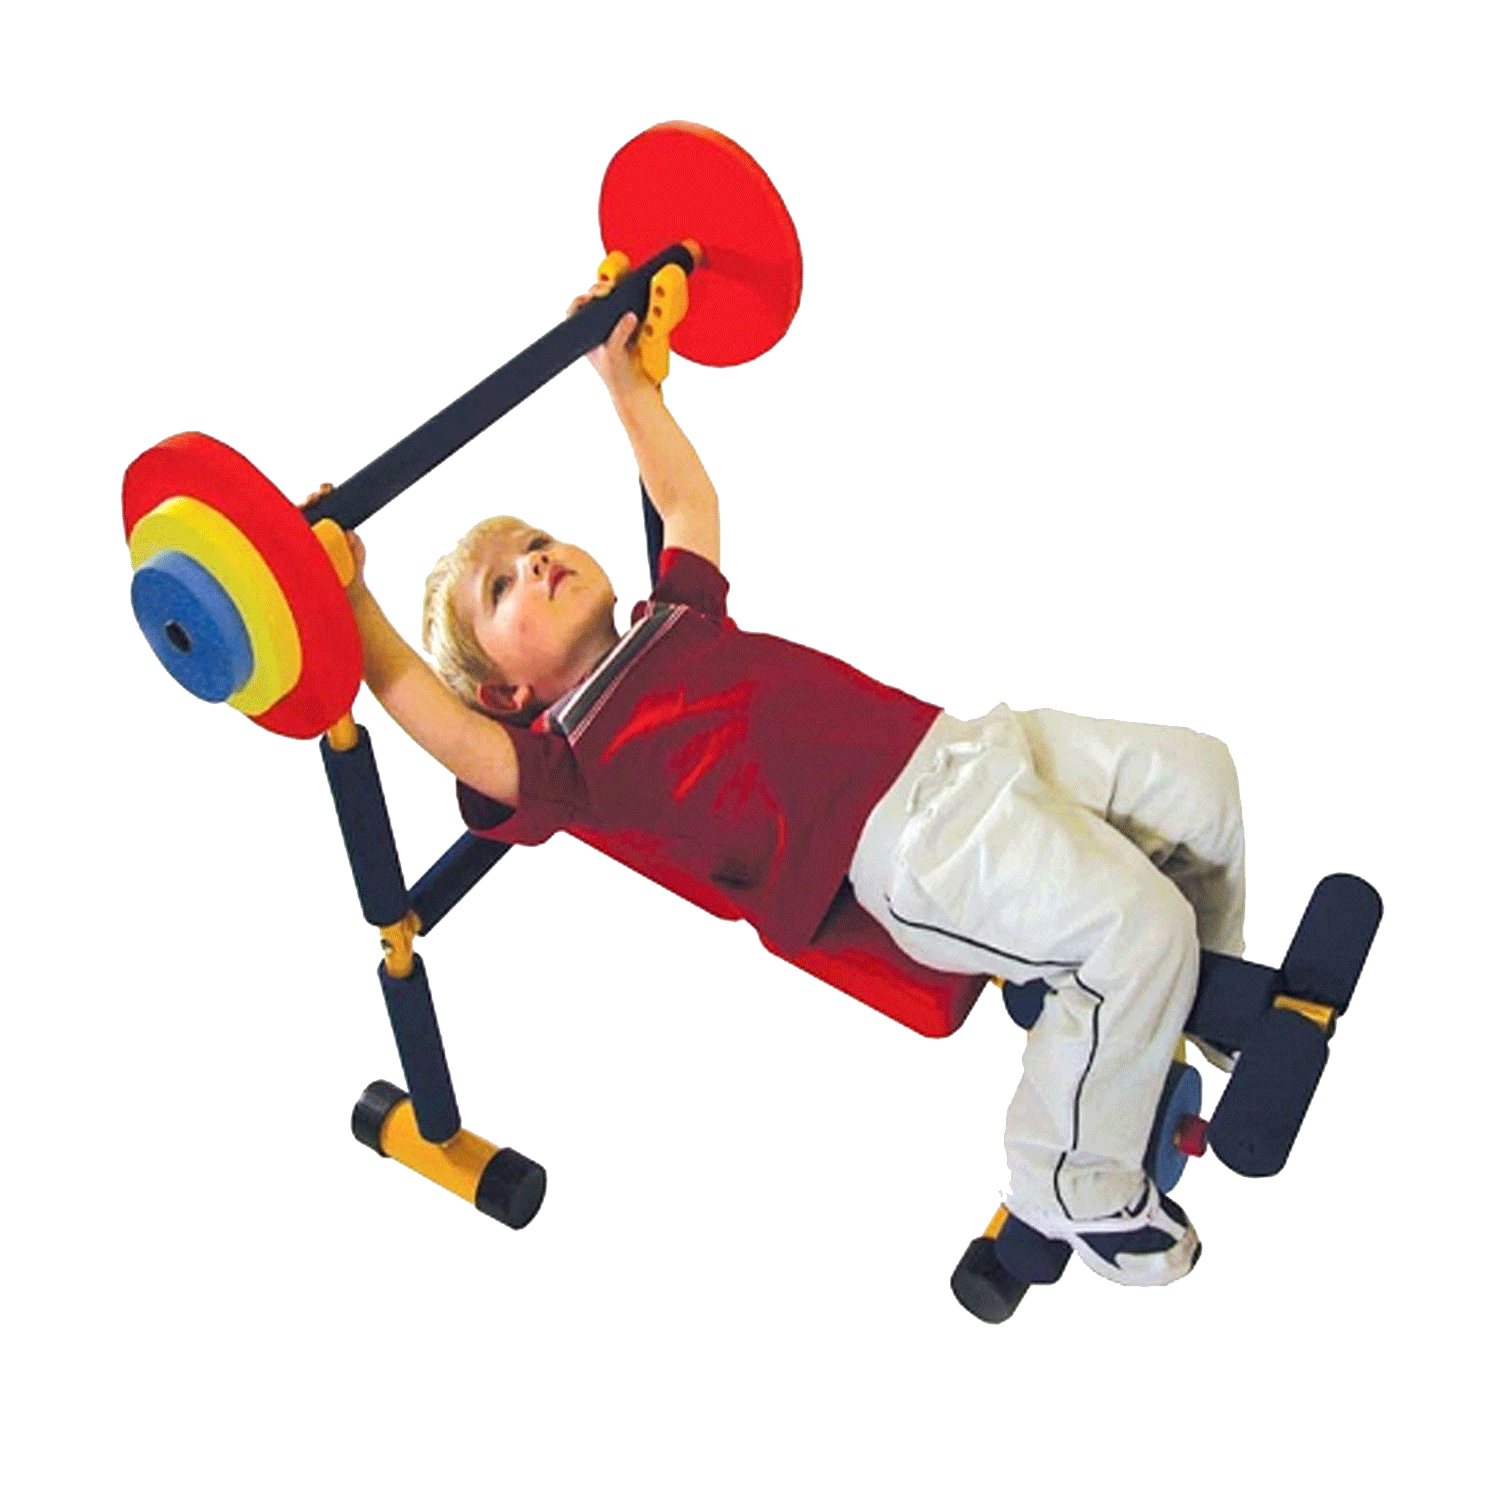 Çocuk fitness halter ağırlık kaldırma aleti